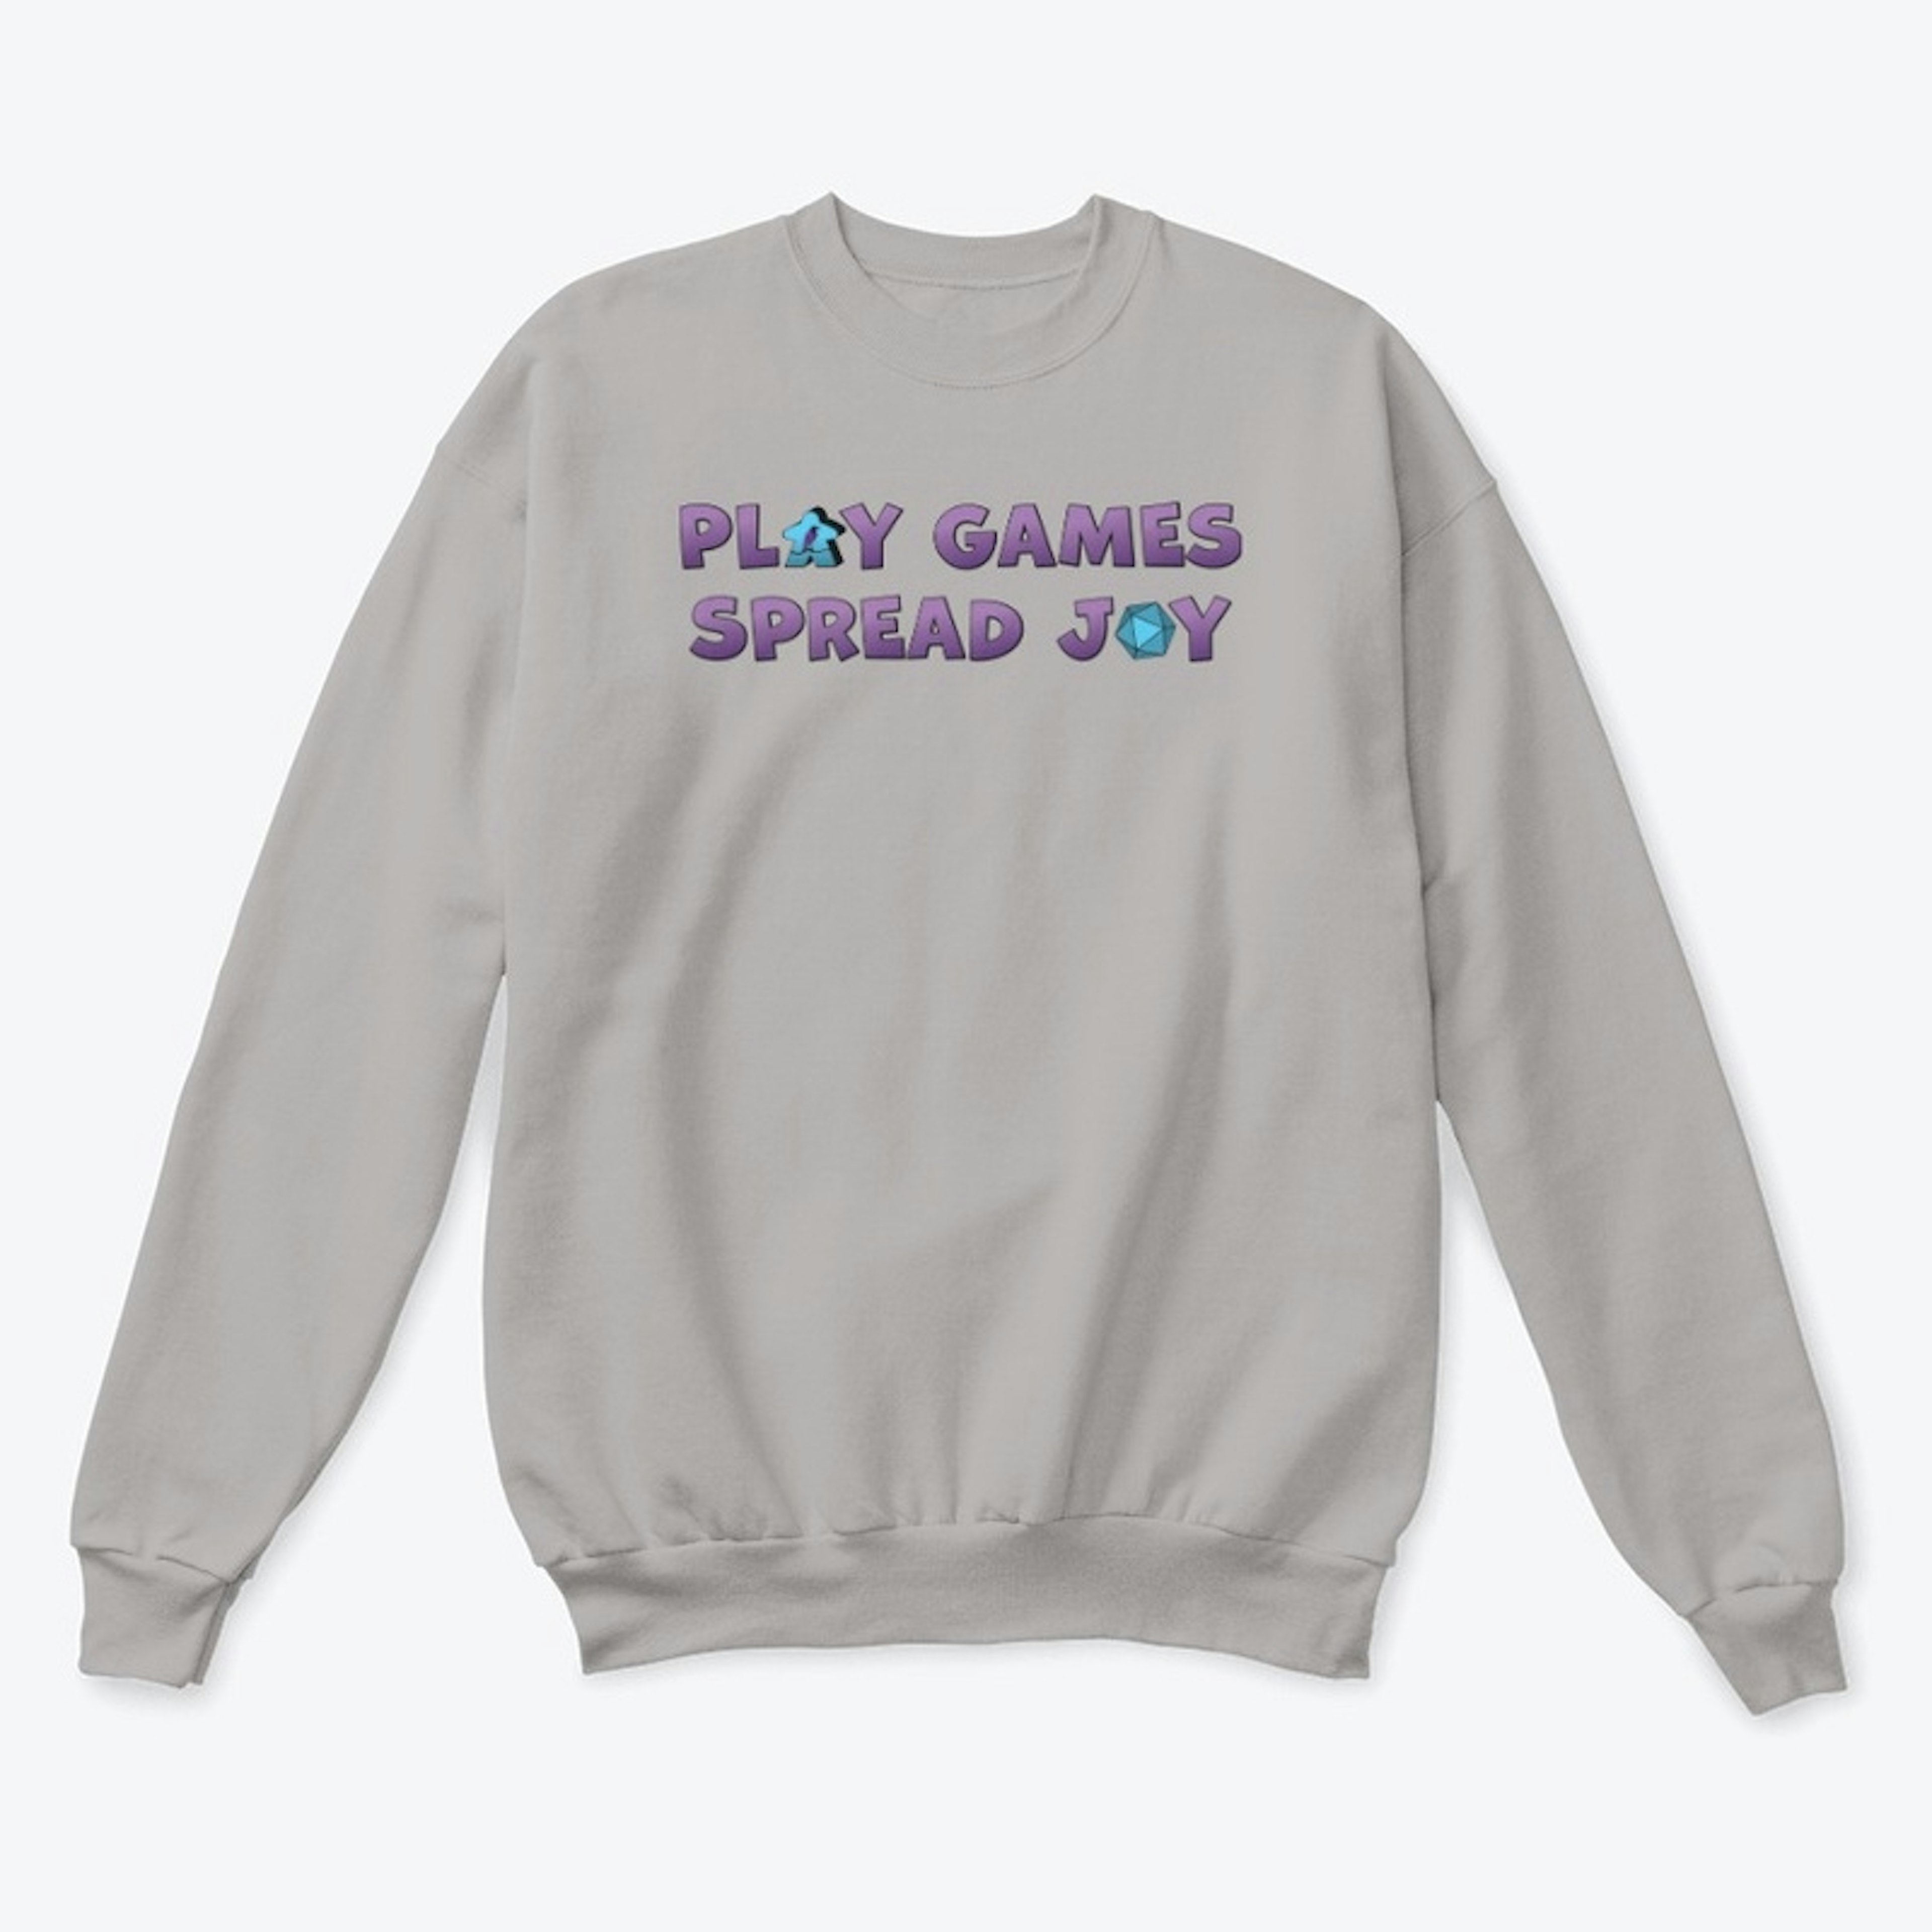 "Play Games Spread Joy" Tops